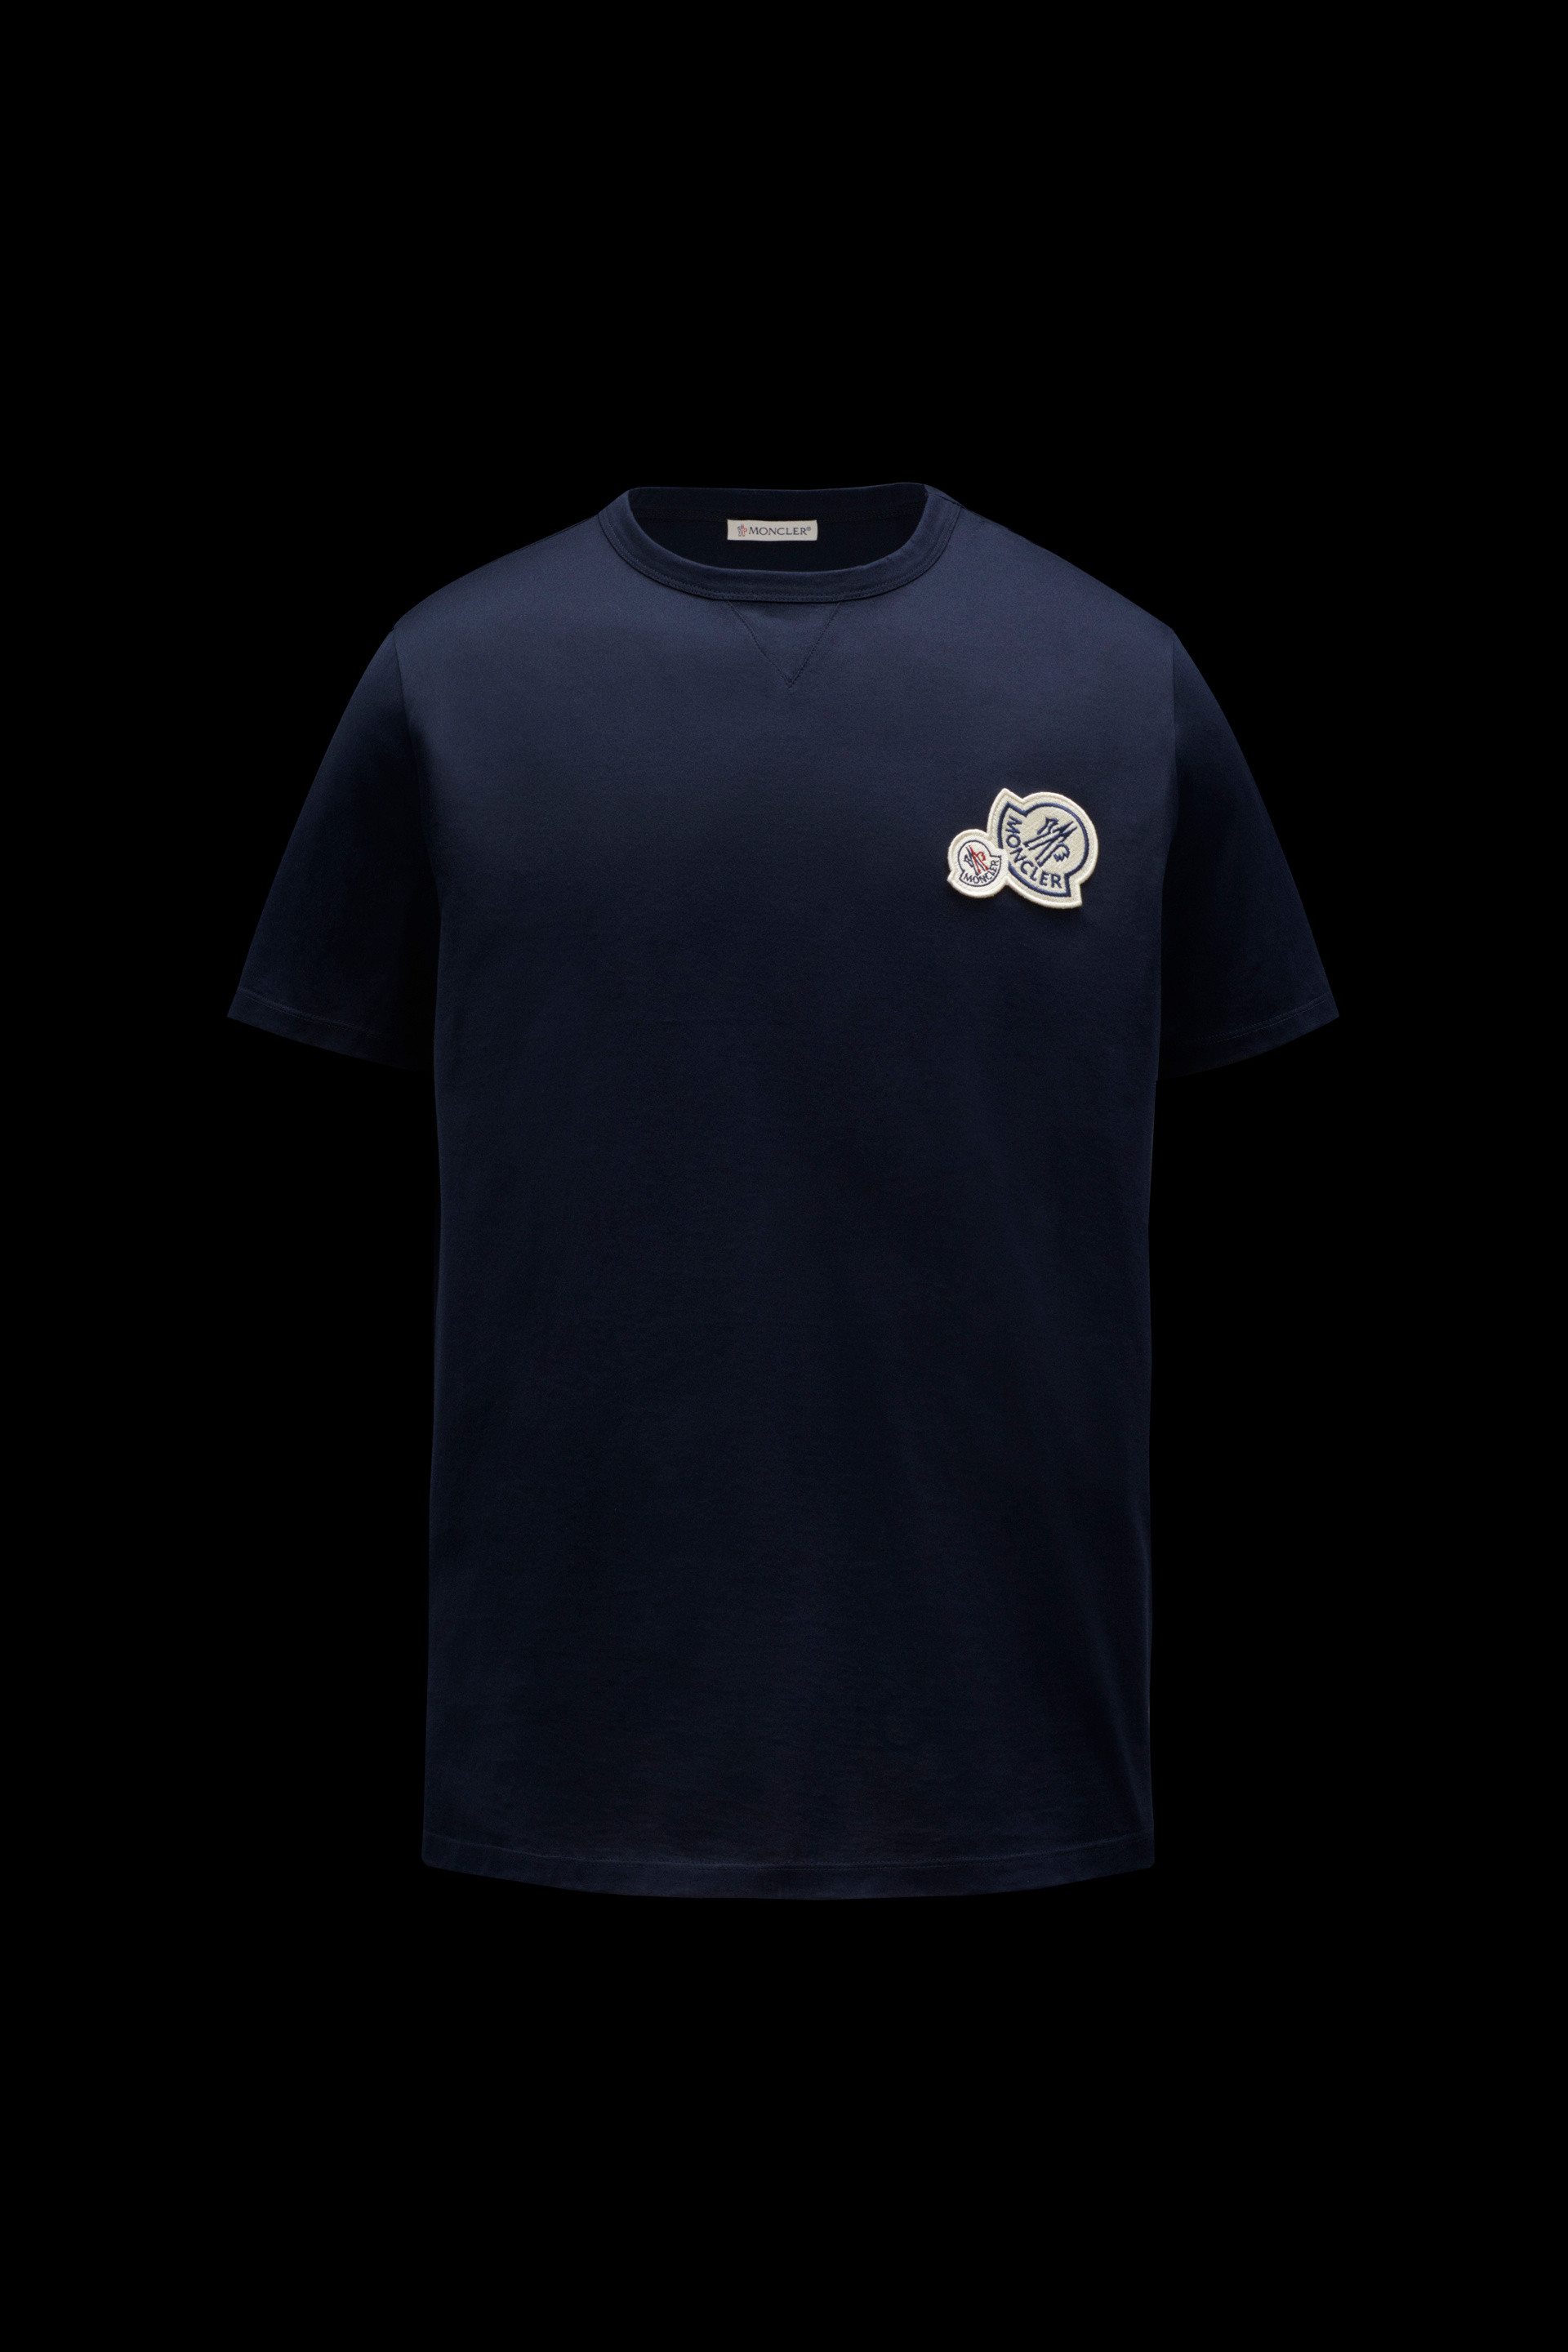 ナイトブルー 胸にロゴ入りTシャツ : Tシャツ＆ポロシャツ 向けの メンズ | モンクレール